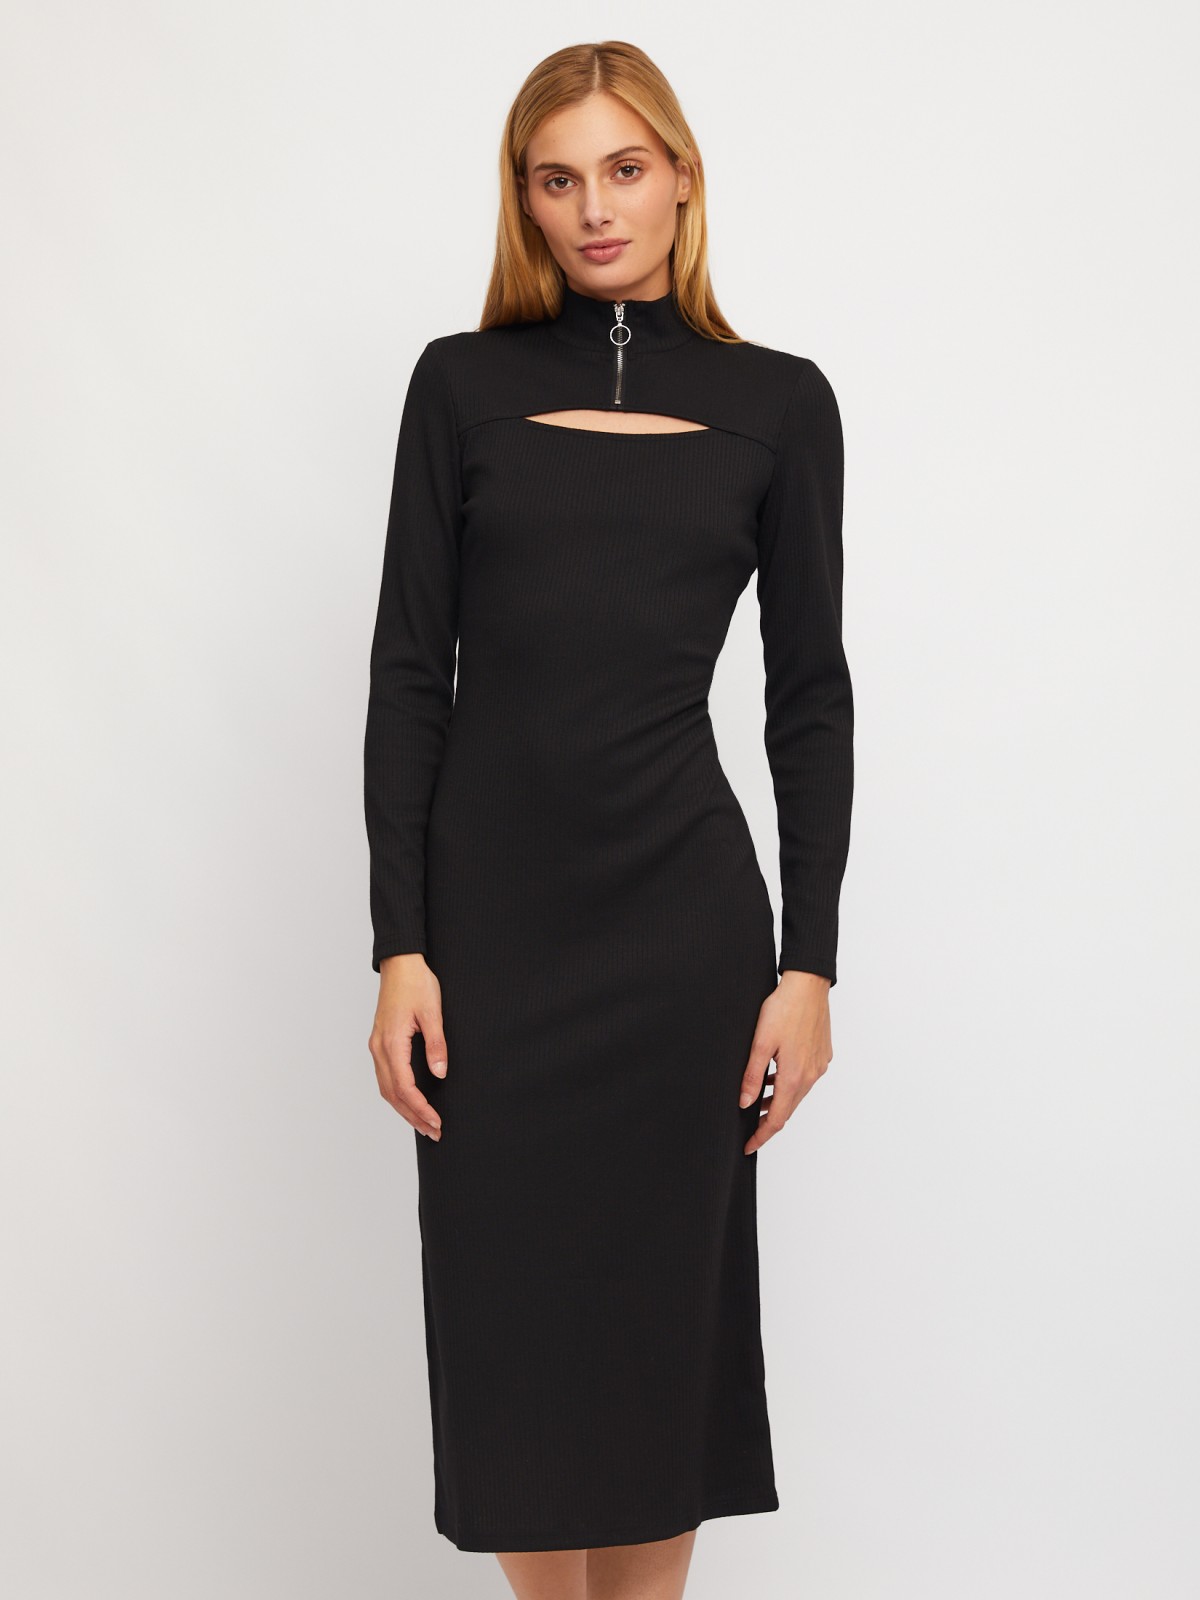 Трикотажное платье-лапша с горлом на молнии и вырезом zolla 02411812L301, цвет черный, размер S - фото 1